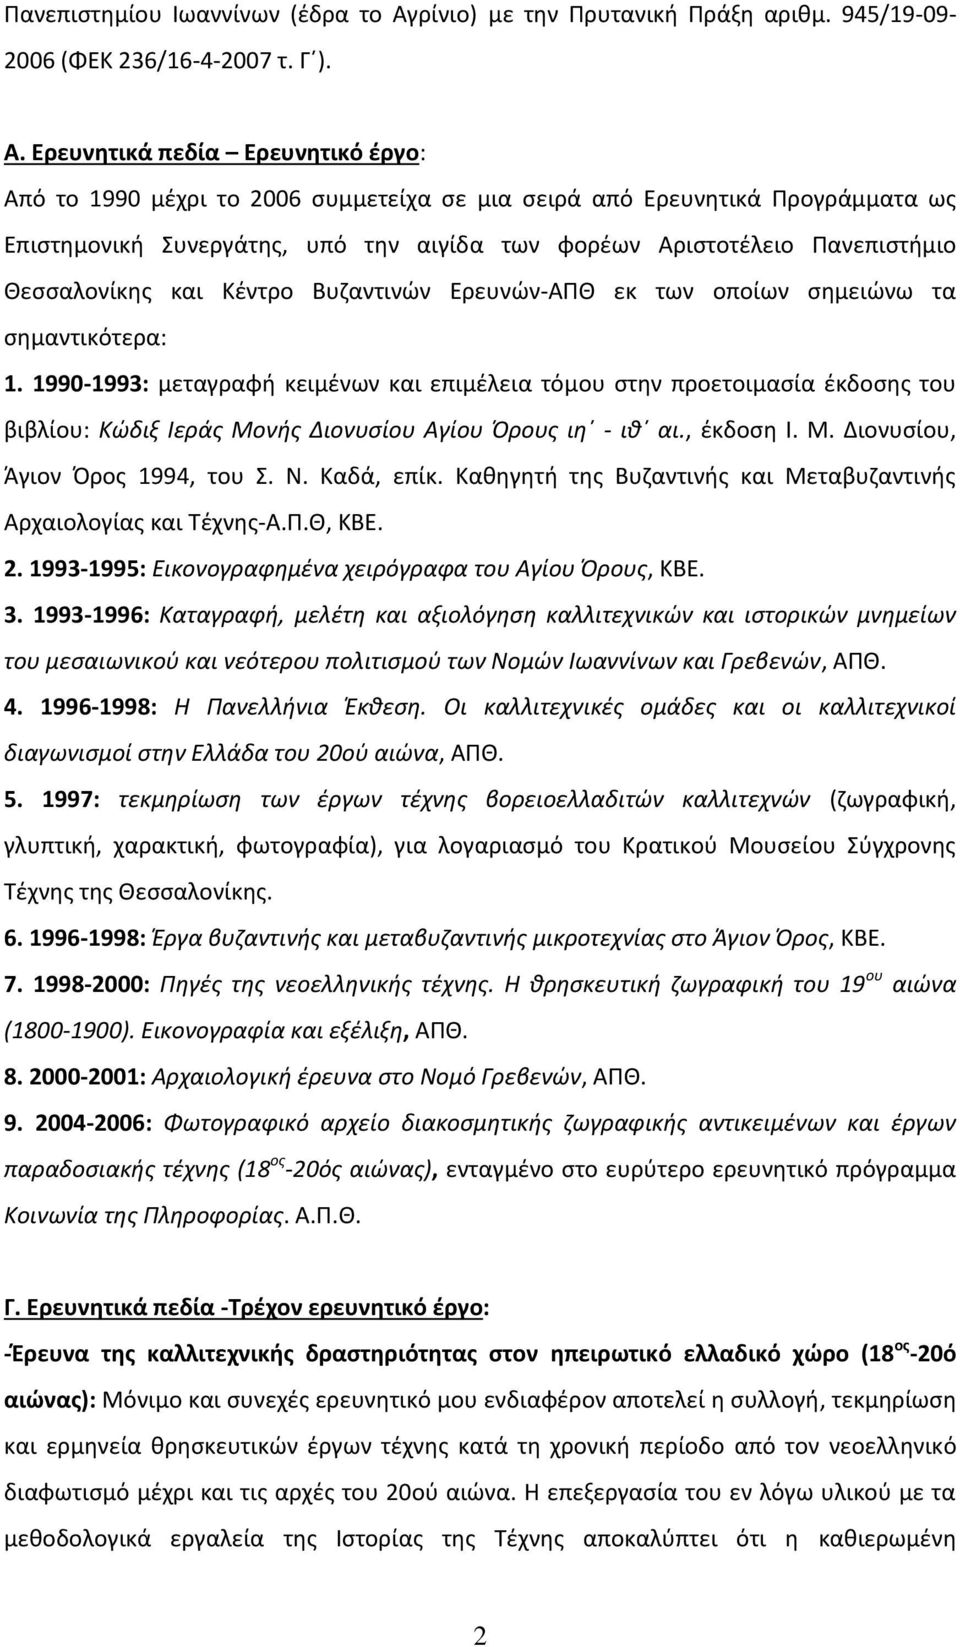 Ερευνητικά πεδία Ερευνητικό έργο: Από το 1990 μέχρι το 2006 συμμετείχα σε μια σειρά από Ερευνητικά Προγράμματα ως Επιστημονική Συνεργάτης, υπό την αιγίδα των φορέων Αριστοτέλειο Πανεπιστήμιο